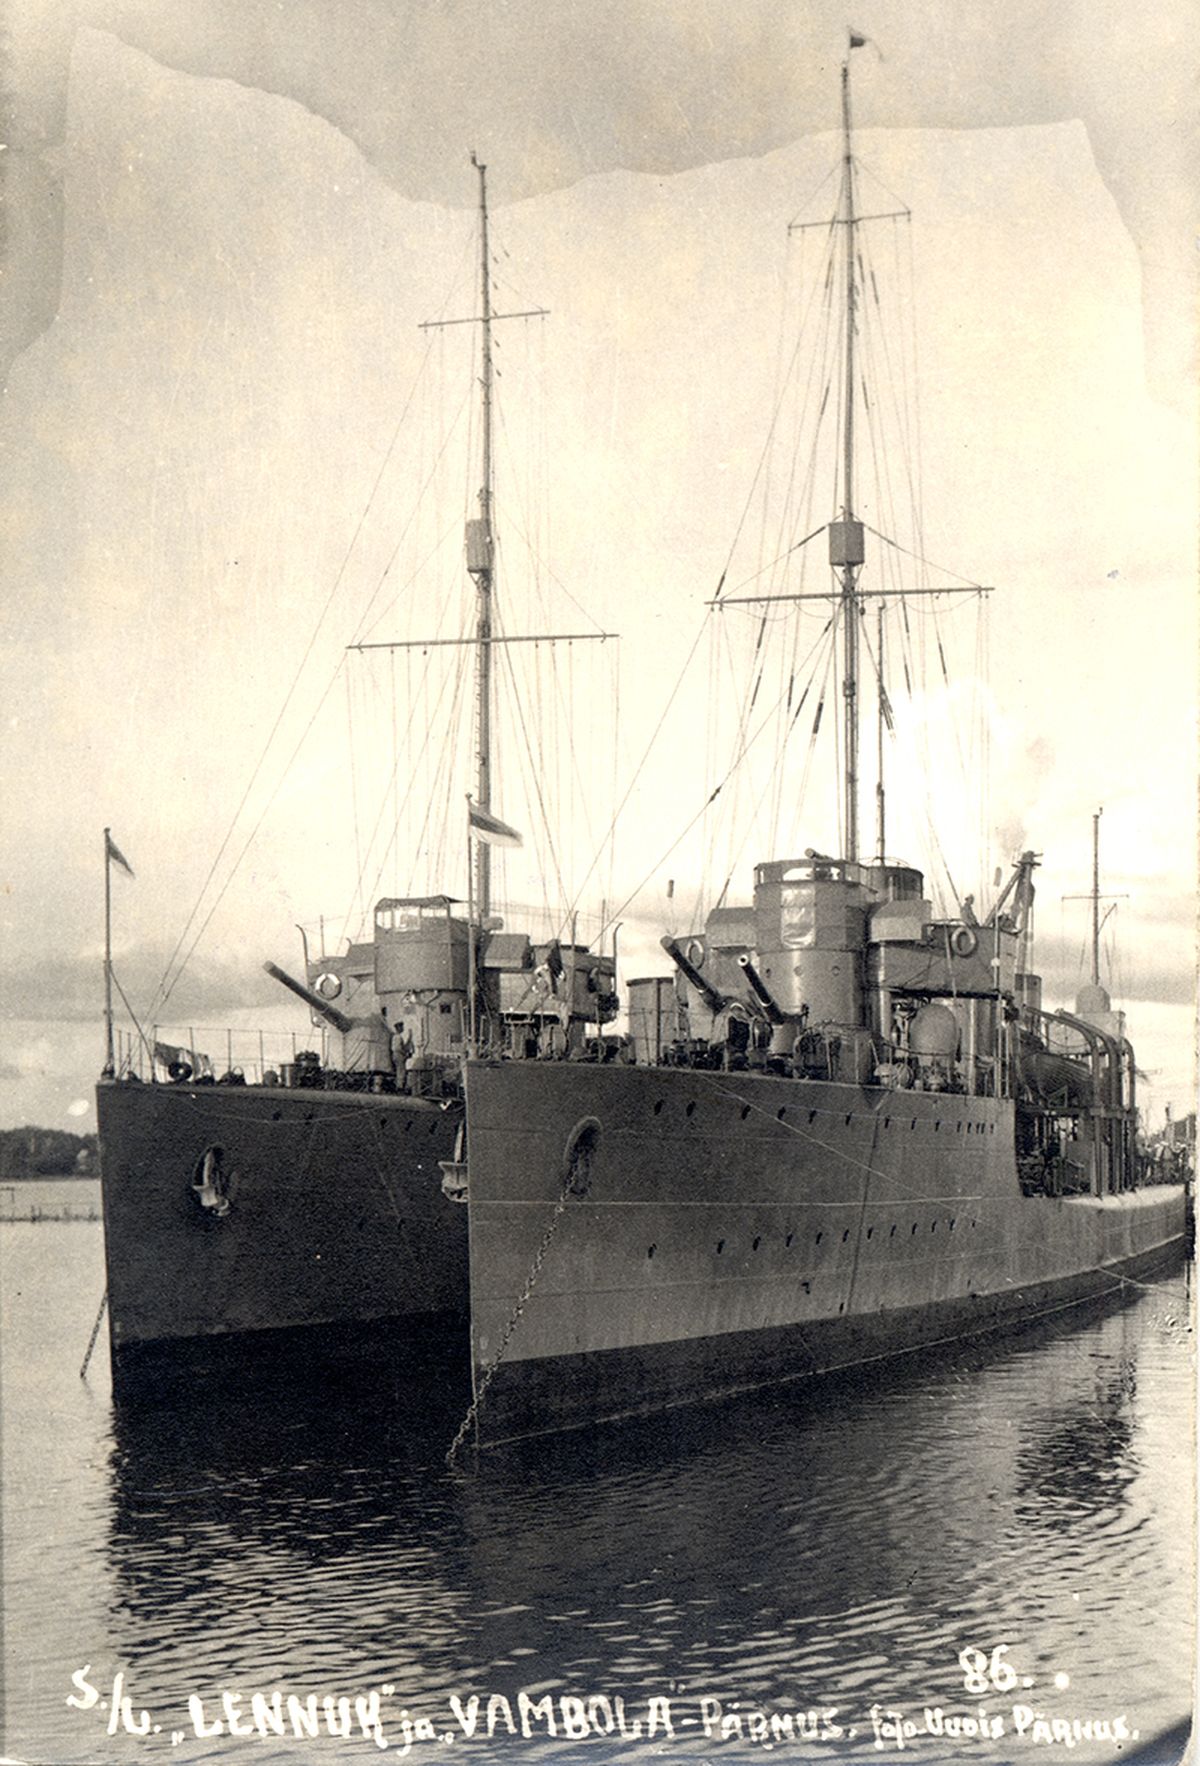 Venelastelt vallutatud, hilisemad Eesti mereväe laevad Lennuk ja Wambola Pärnu sadamas.